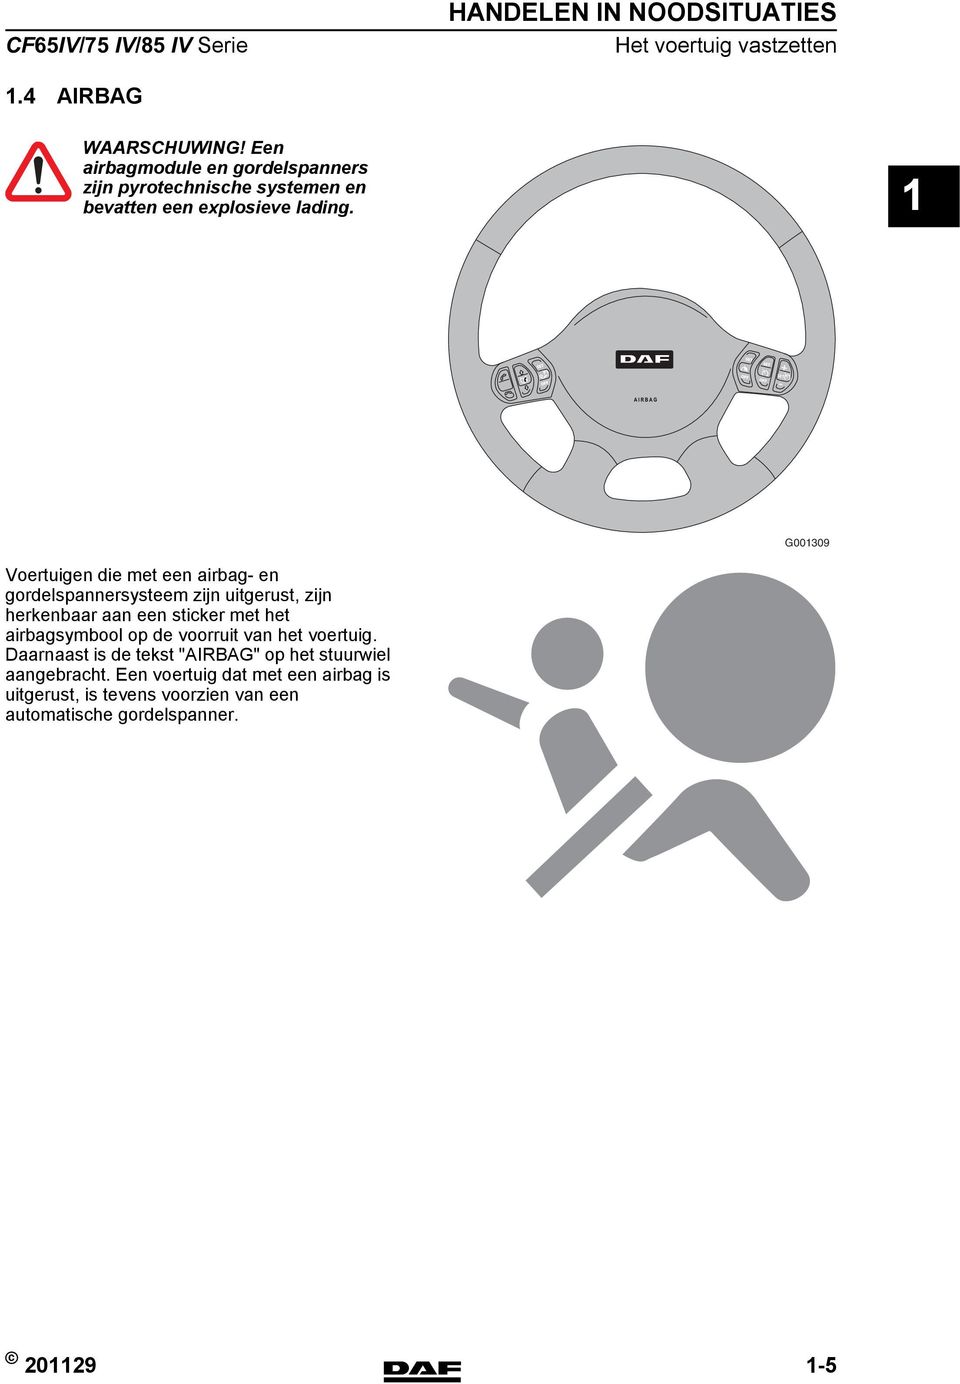 SET G00309 Voertuigen die met een airbag- en gordelspannersysteem zijn uitgerust, zijn herkenbaar aan een sticker met het